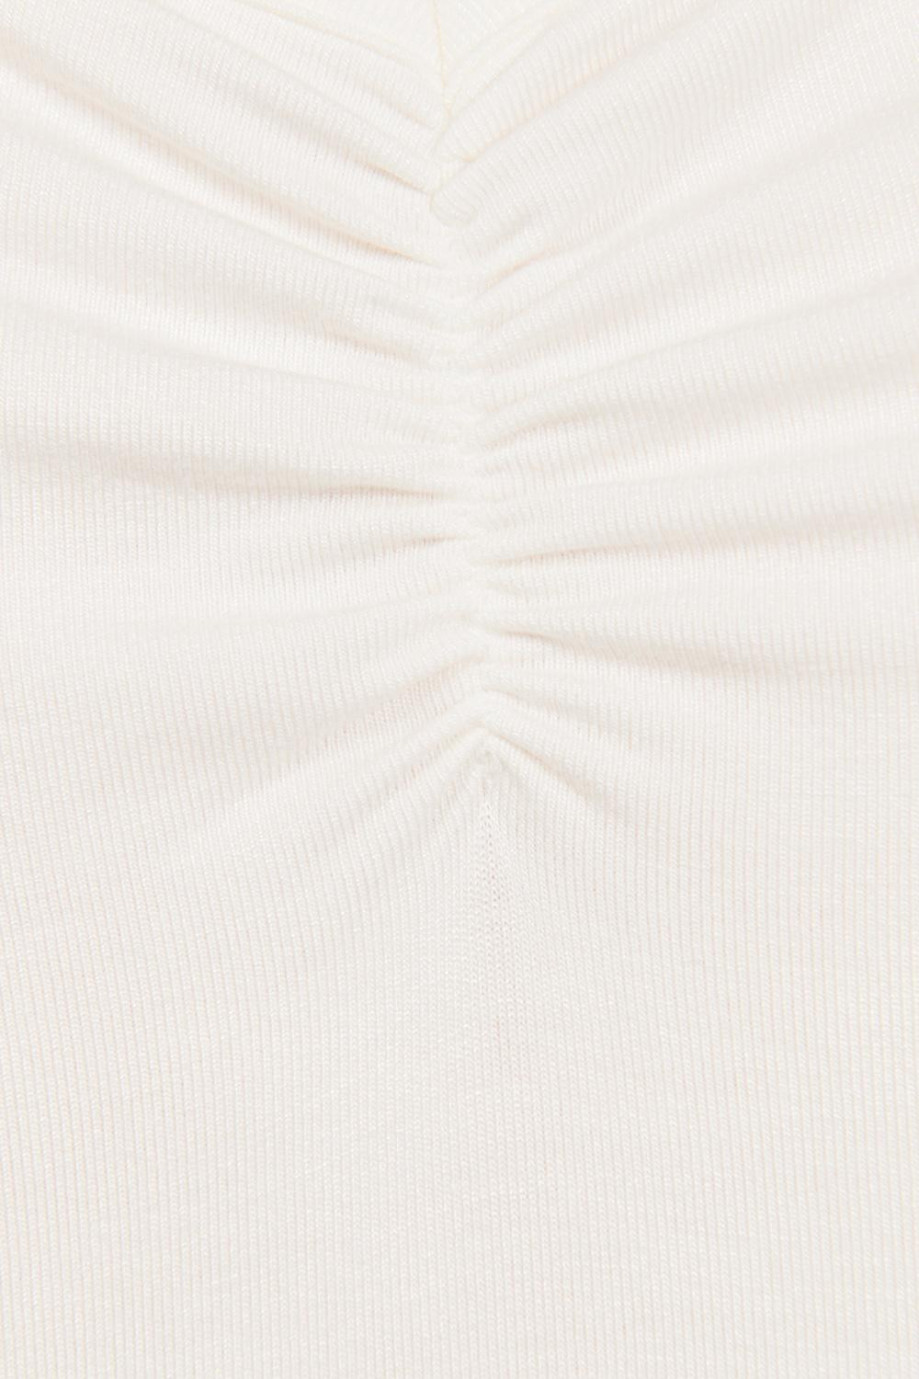 Camiseta unicolor con manga corta, recogido y cuello en V